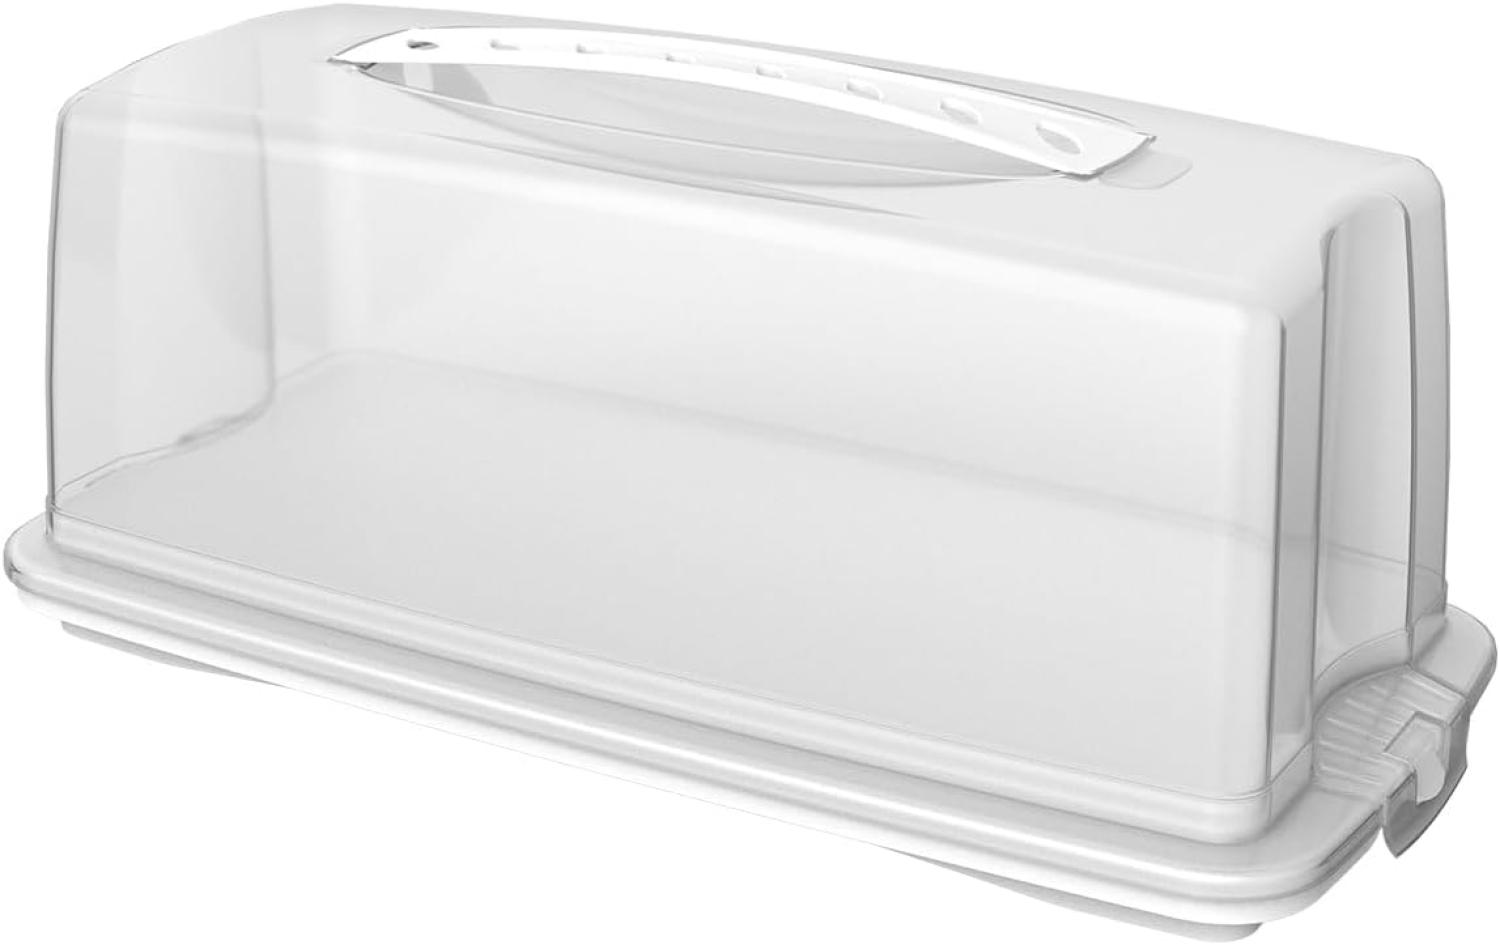 Rotho Fresh Kuchenbehälter mit Haube und Tragegriff, Kunststoff (PP) BPA-frei, weiss, (36. 0 x 16. 5 x 16. 5 cm) Bild 1